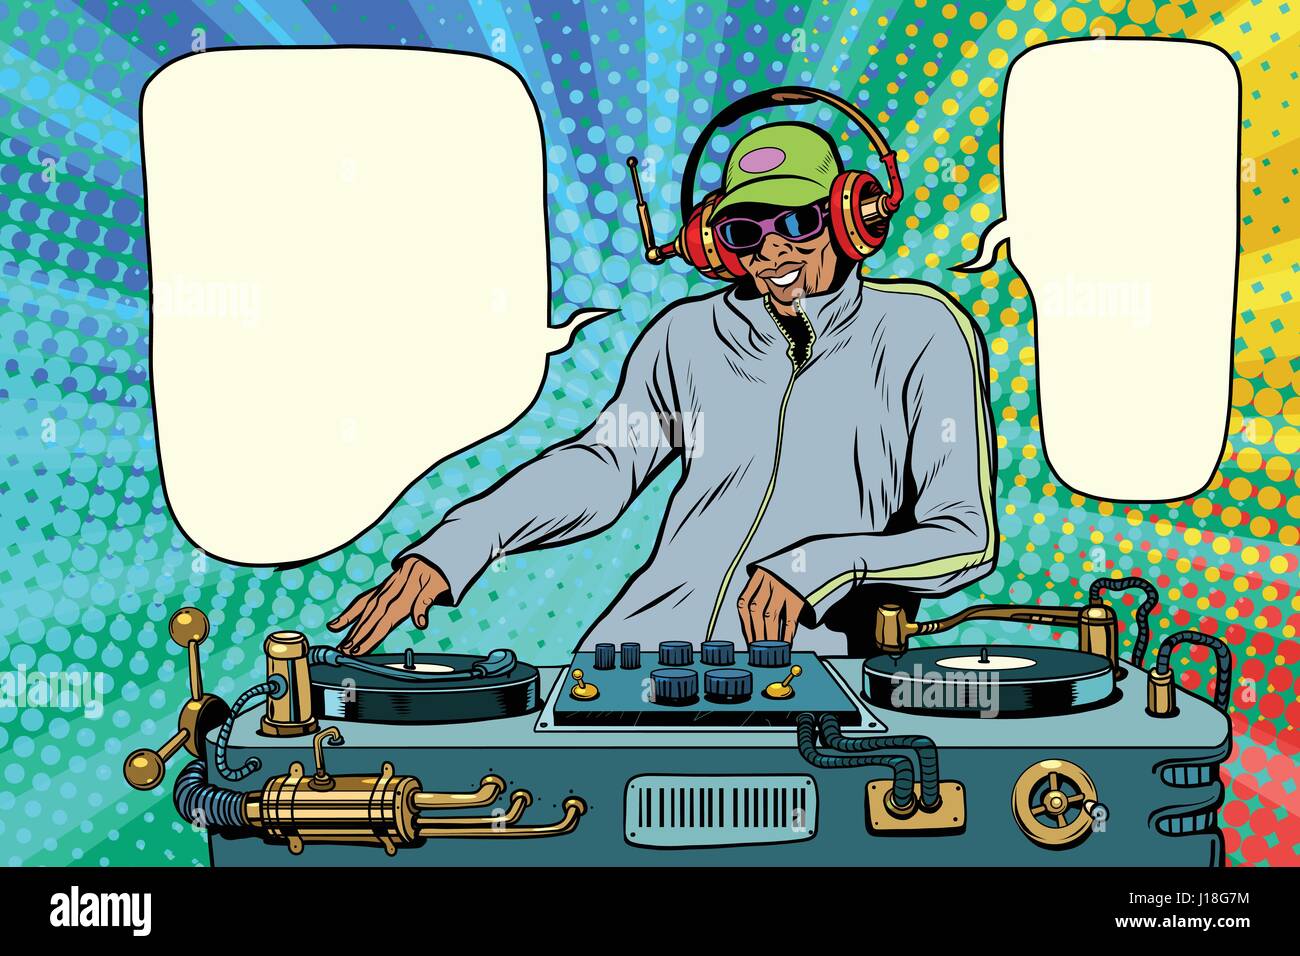 Garçon DJ Mix musique. Pop art retro illustration vectorielle. Peuple afro-américain  Image Vectorielle Stock - Alamy